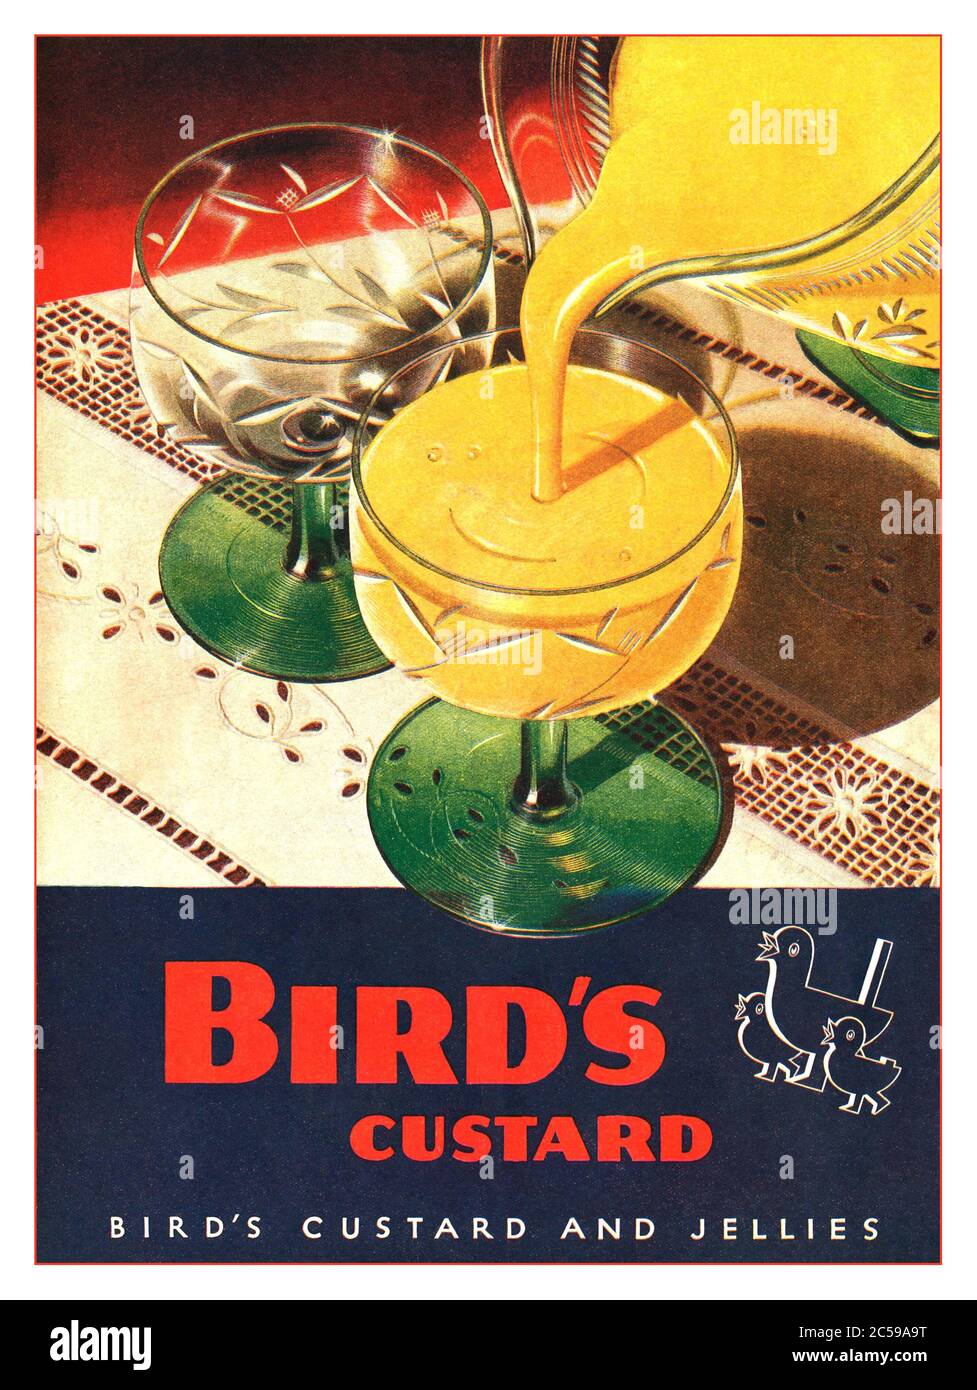 CRÈME ANGLAISE D’OISEAUX publicité rétro pour la crème anglaise et les gelées d’oiseau. Verser la crème anglaise préparée dans des verres à dessert publicité du magazine de presse Wartist de 1944 UK Banque D'Images